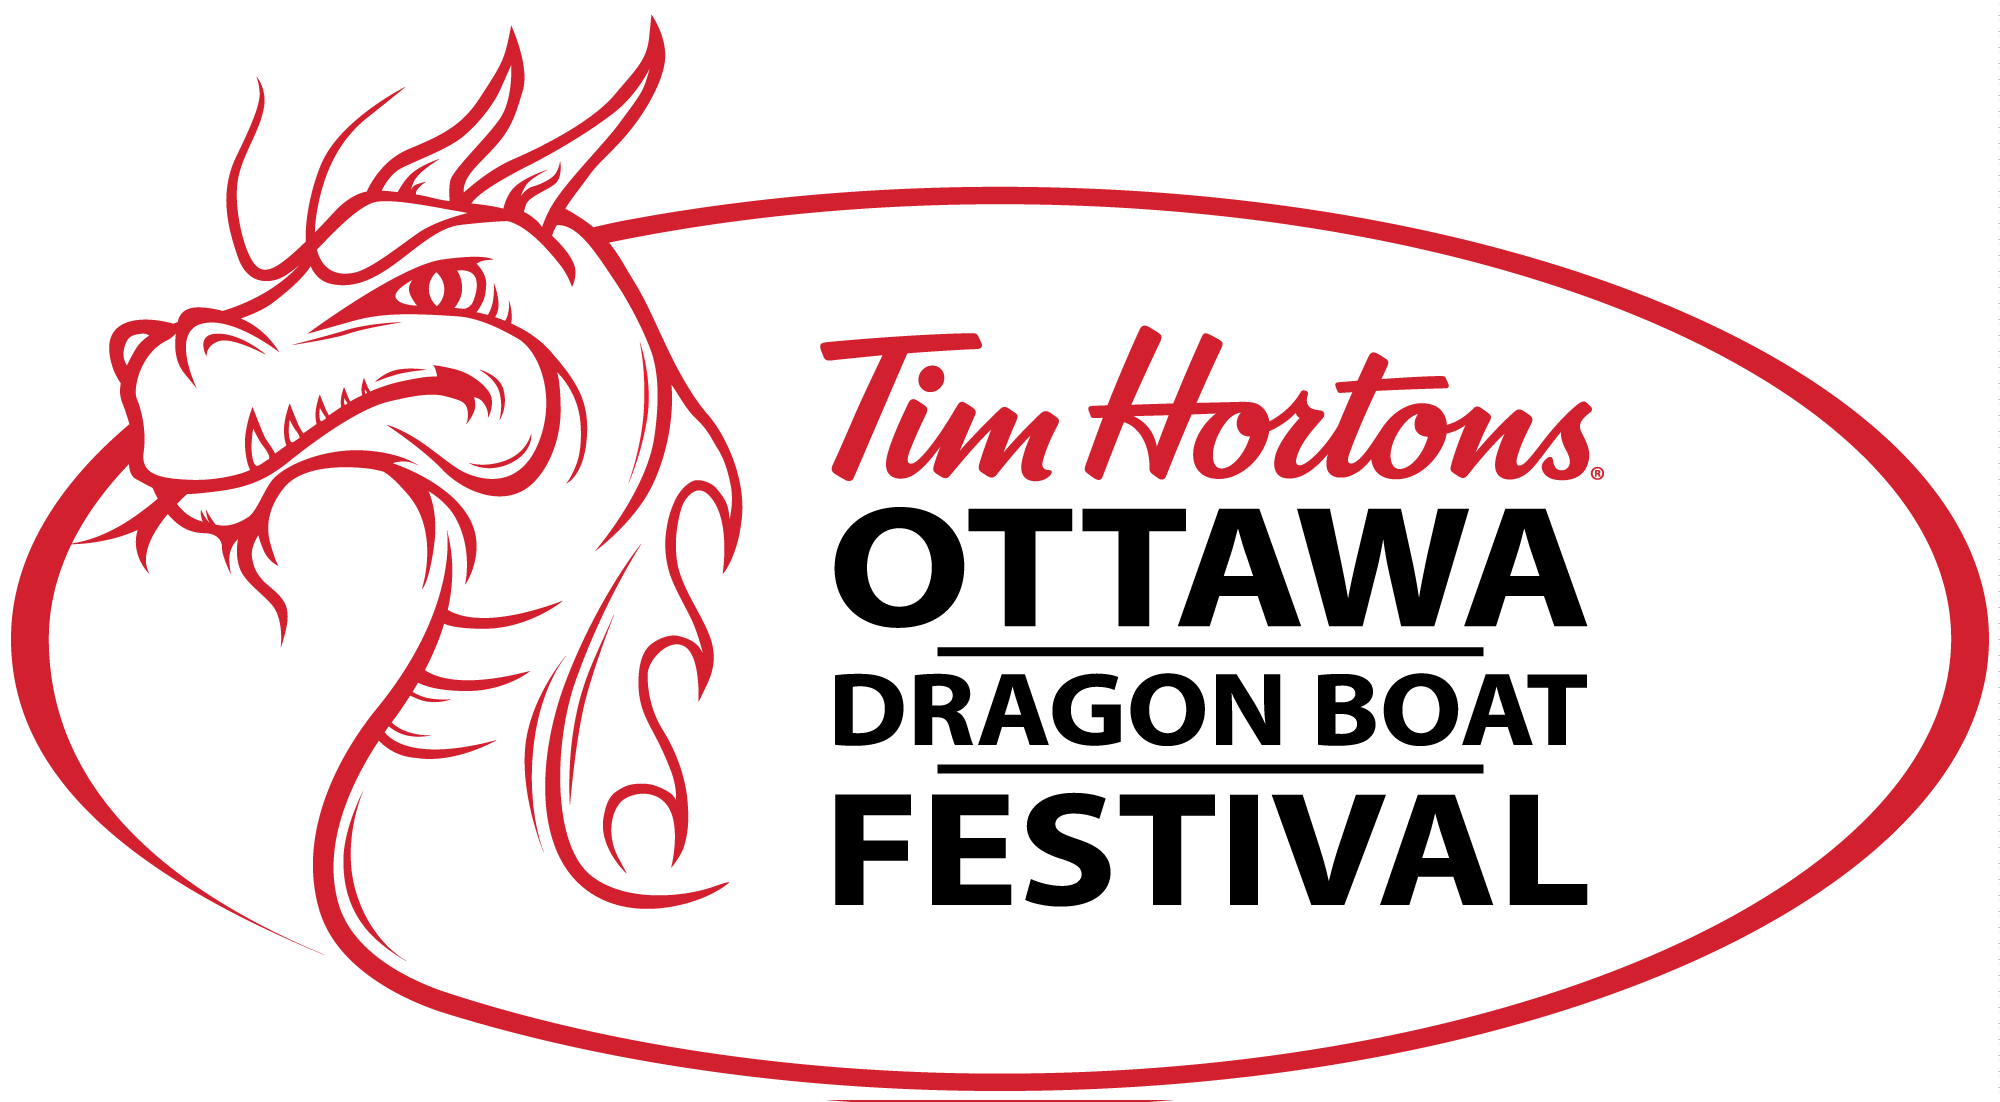 Vendors Tim Hortons Ottawa Dragon Boat Festival